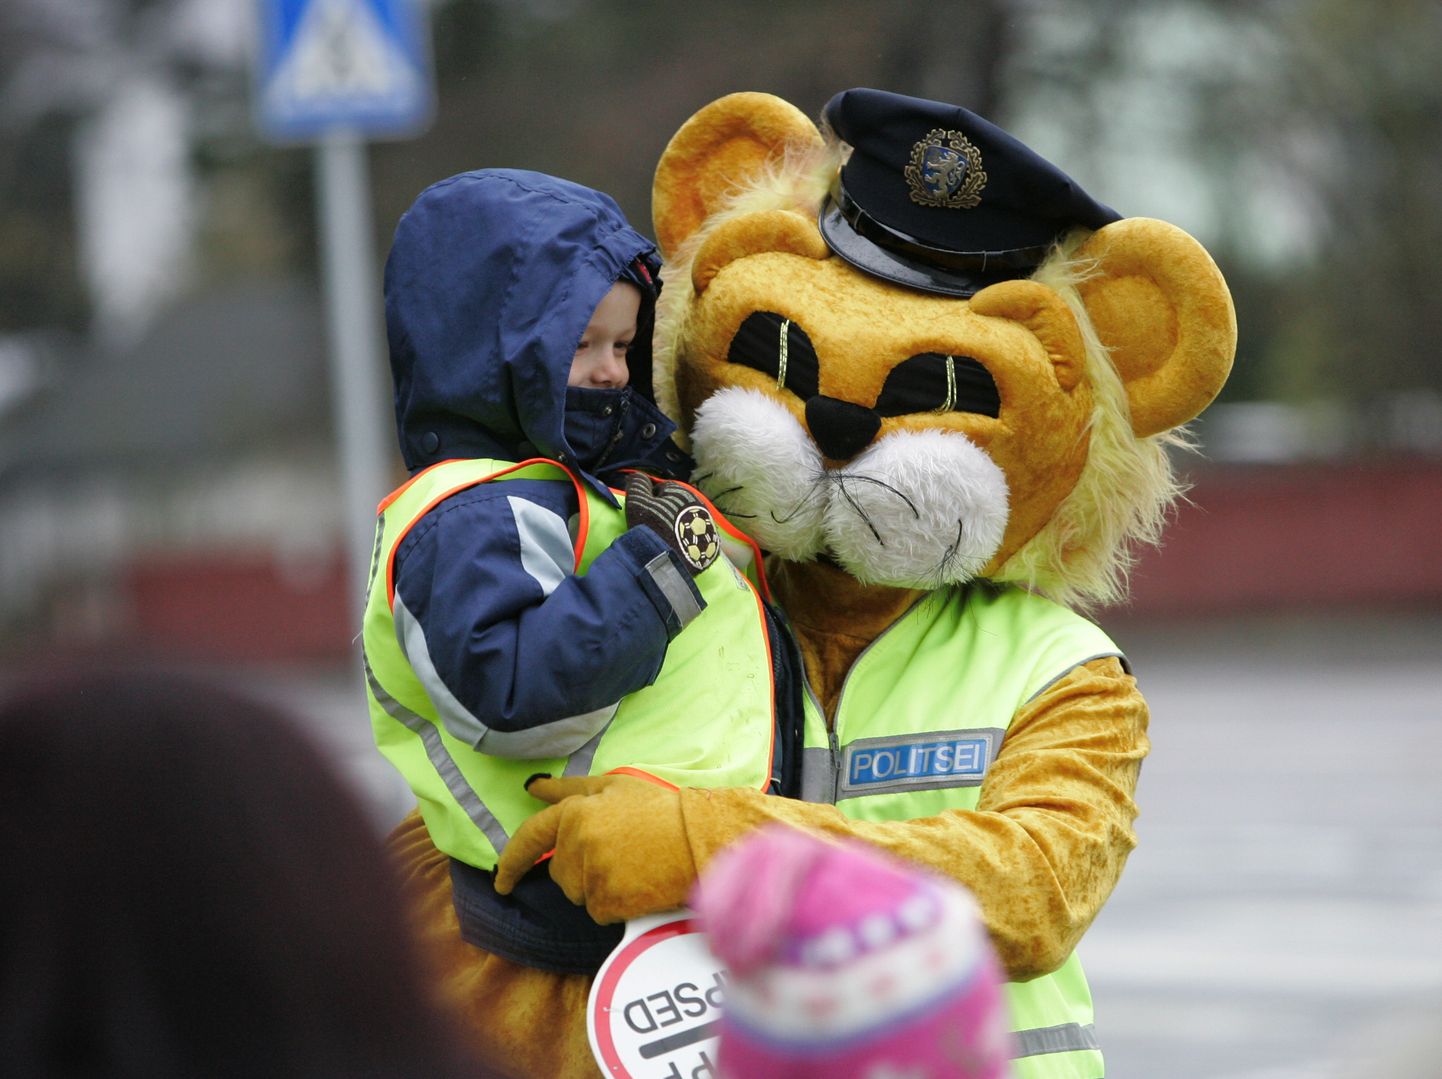 Politsei maskott Lõvi Leo on laste suur sõber.